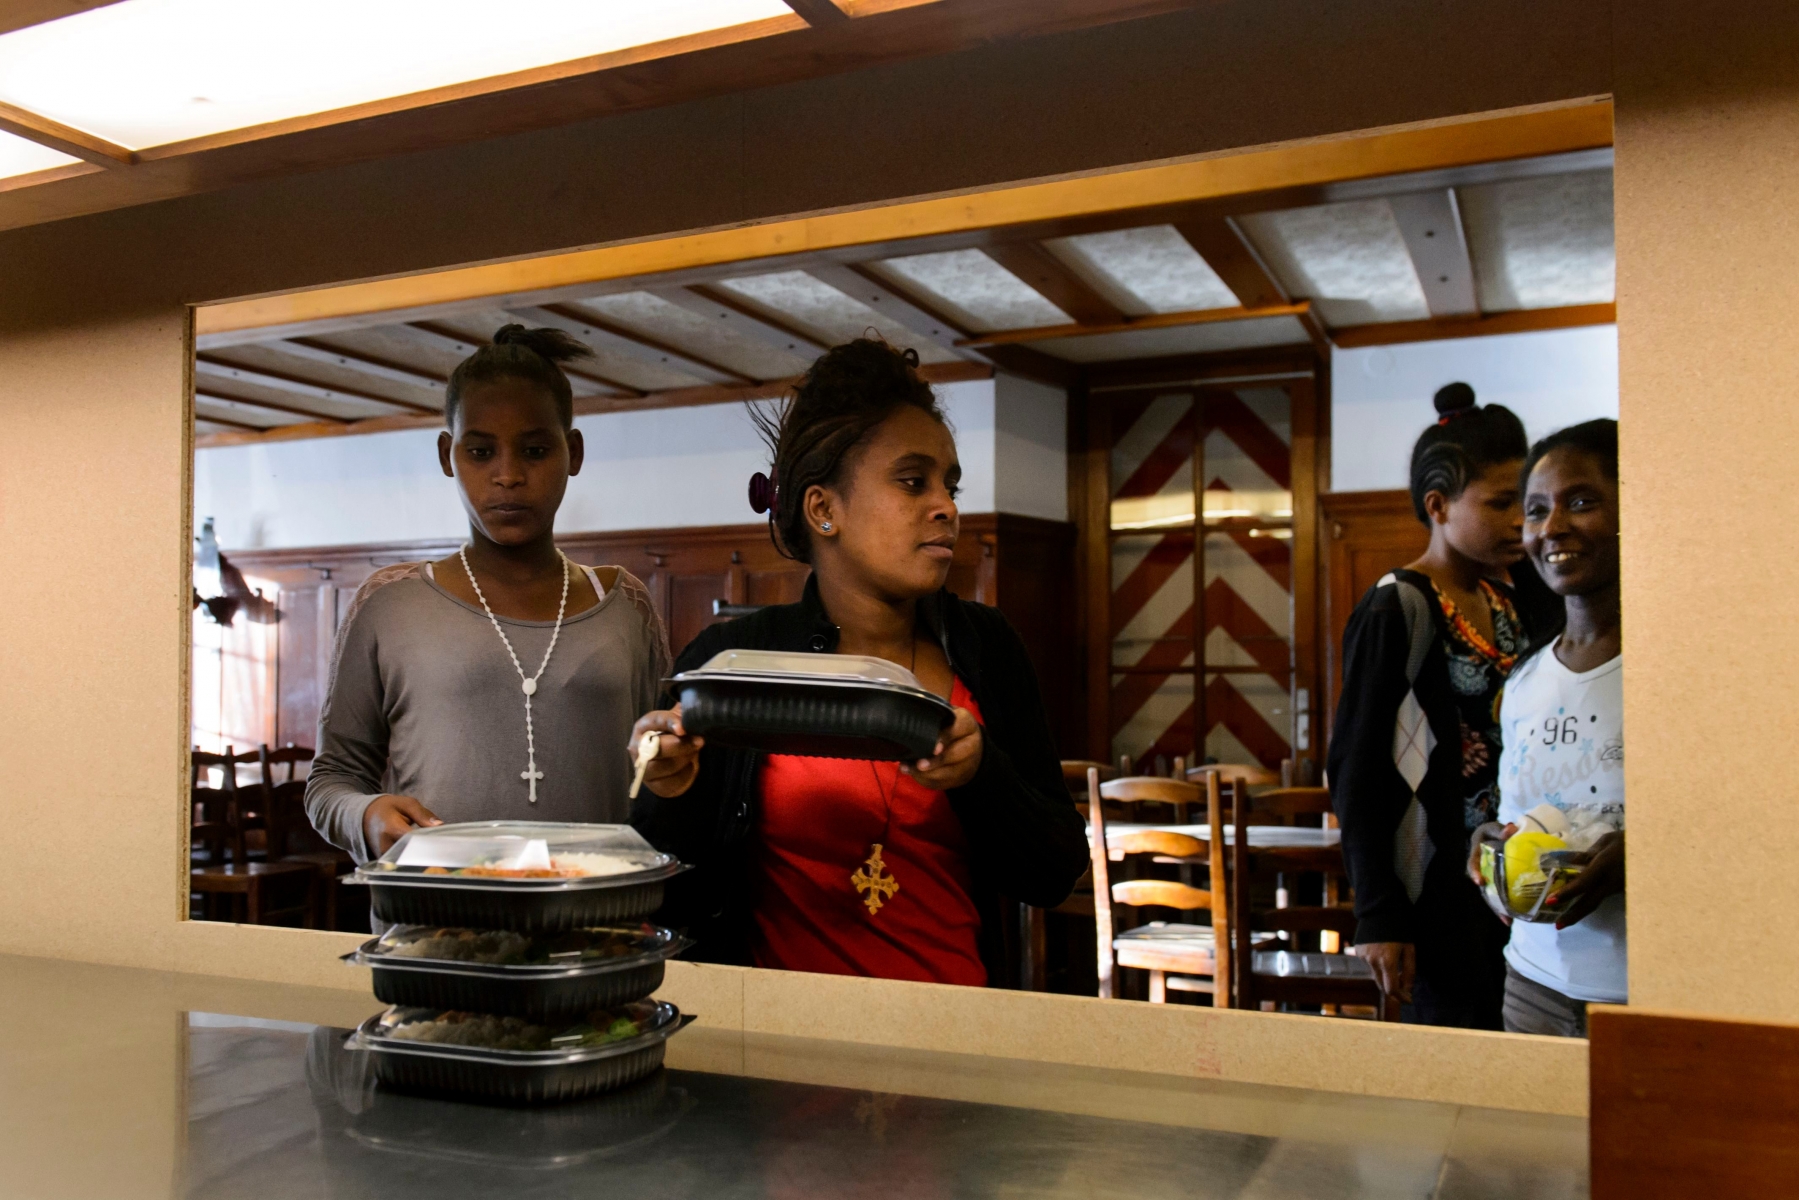 Des migrants, ici des femmes erythreennes, prennent le repas du soir pour la premiere fois dans la salle a manger de la cuisine de l'Auberge du Chalet-a-Gobet, transforme pour quelques mois par l'EVAM en centre d'accueil pour migrants ce jeudi 24 septembre 2015 a Lausanne. Afin de contribuer a faire face a l'afflux de migrants, la Ville de Lausanne met a la disposition de l'EVAM (Eablissement vaudois d'accueil des migrants), l'Auberge du Chalet-a-Gobet pour une duree de quelques mois. (KEYSTONE/Jean-Christophe Bott) SCHWEIZ ASYLPOLITIK WAADT